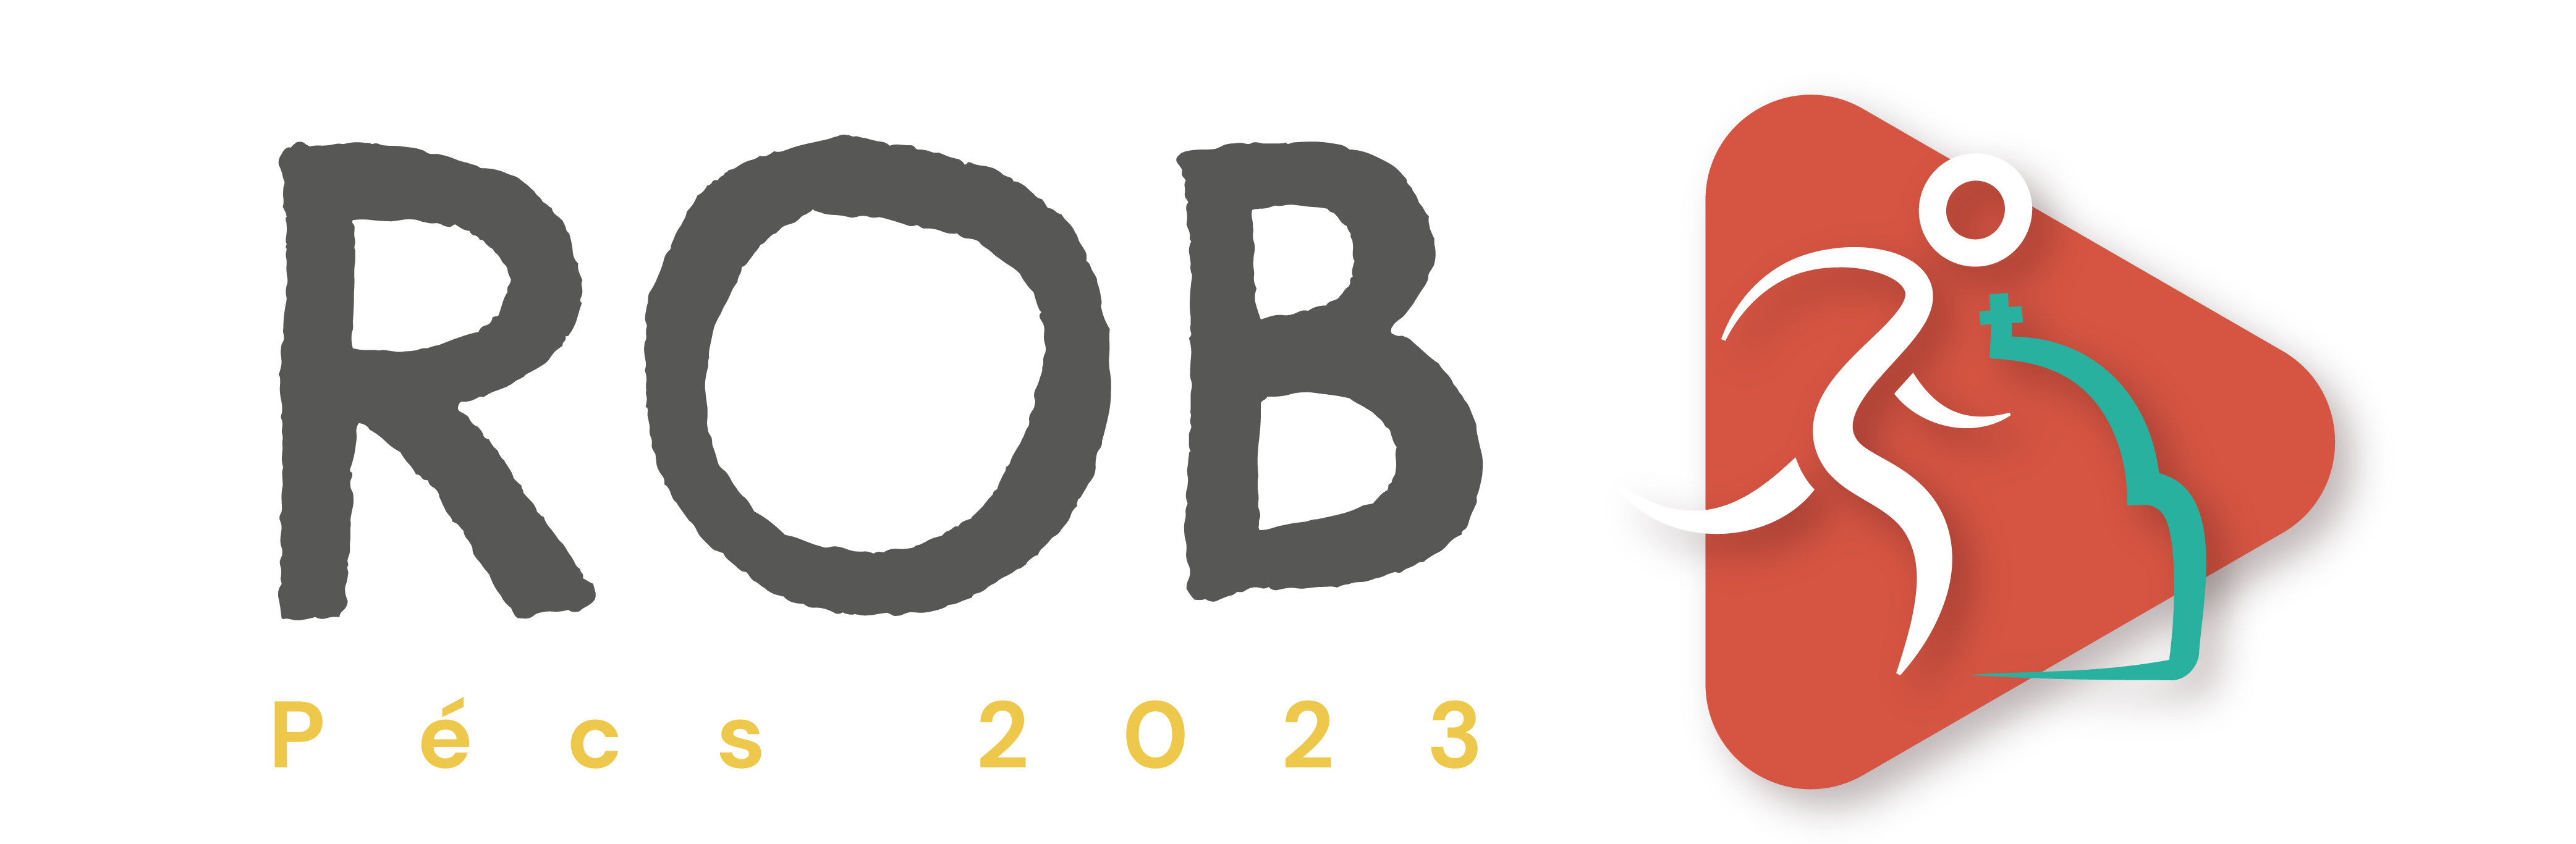 ROB-ORVB 2023